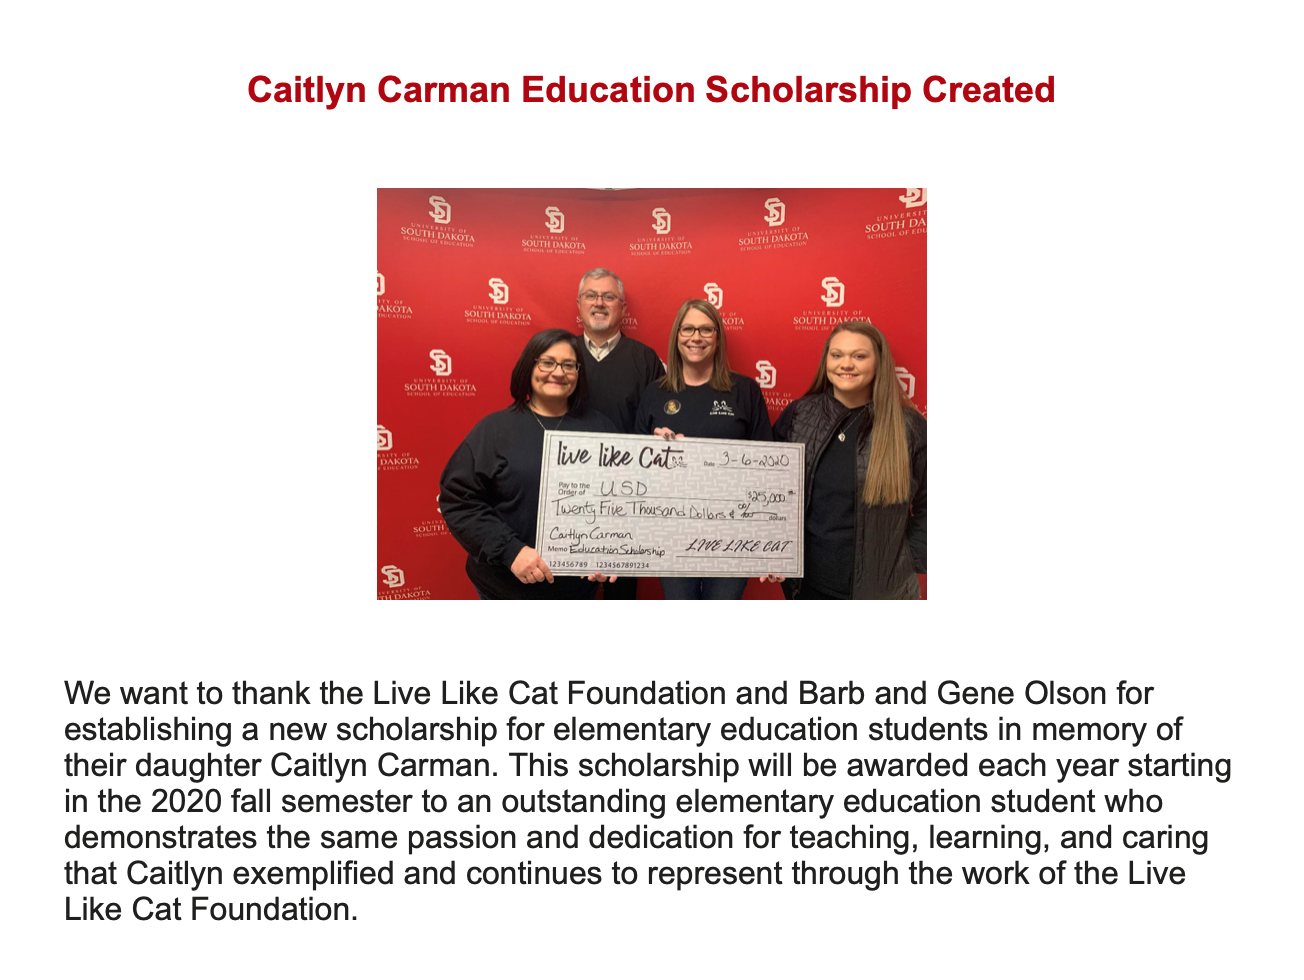 USD Caitlyn Carman Education Scholarship